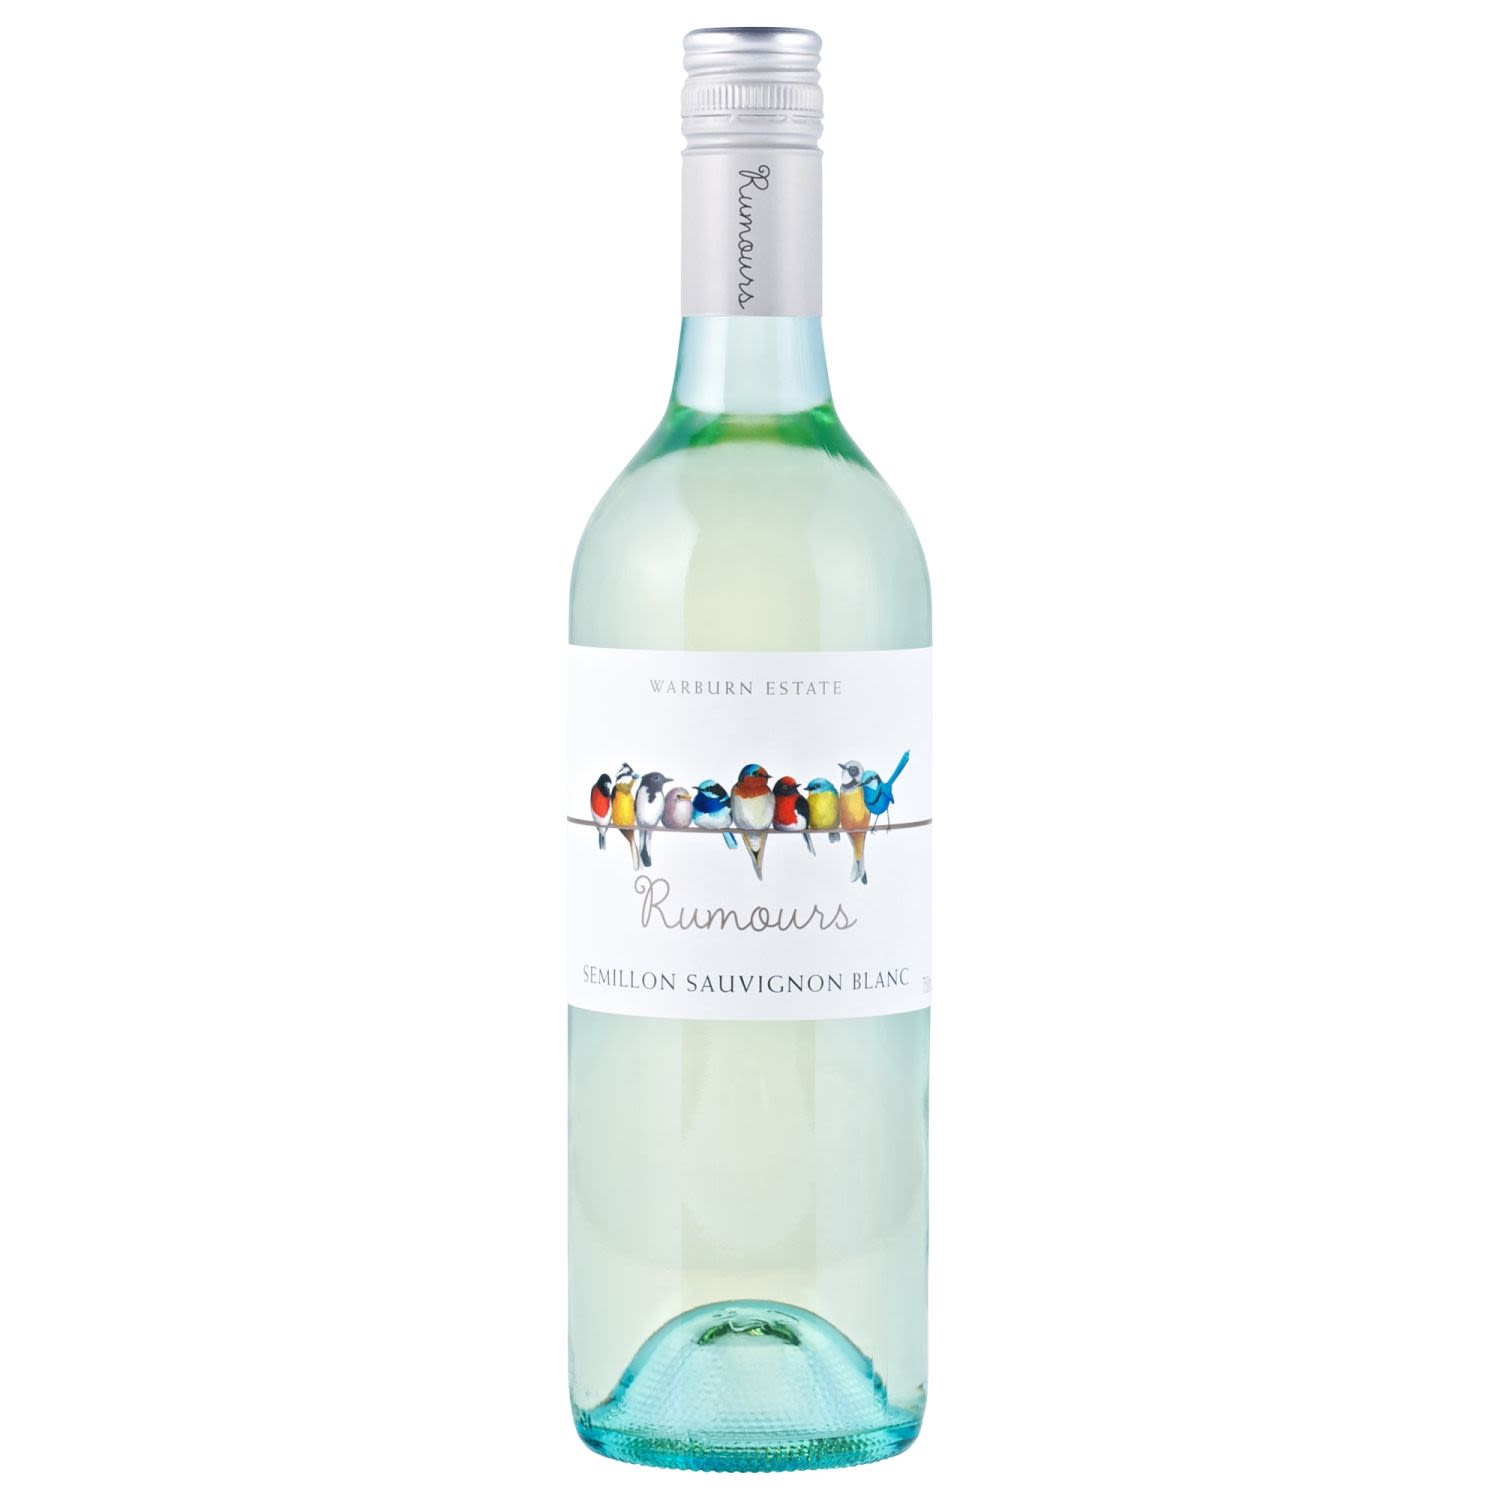 Warburn Rumours Semillon Sauvignon Blanc<br /> <br />Alcohol Volume: 11.00%<br /><br />Pack Format: Bottle<br /><br />Standard Drinks: 6.5</br /><br />Pack Type: Bottle<br /><br />Country of Origin: Australia<br /><br />Region: n/a<br /><br />Vintage: '2019<br />